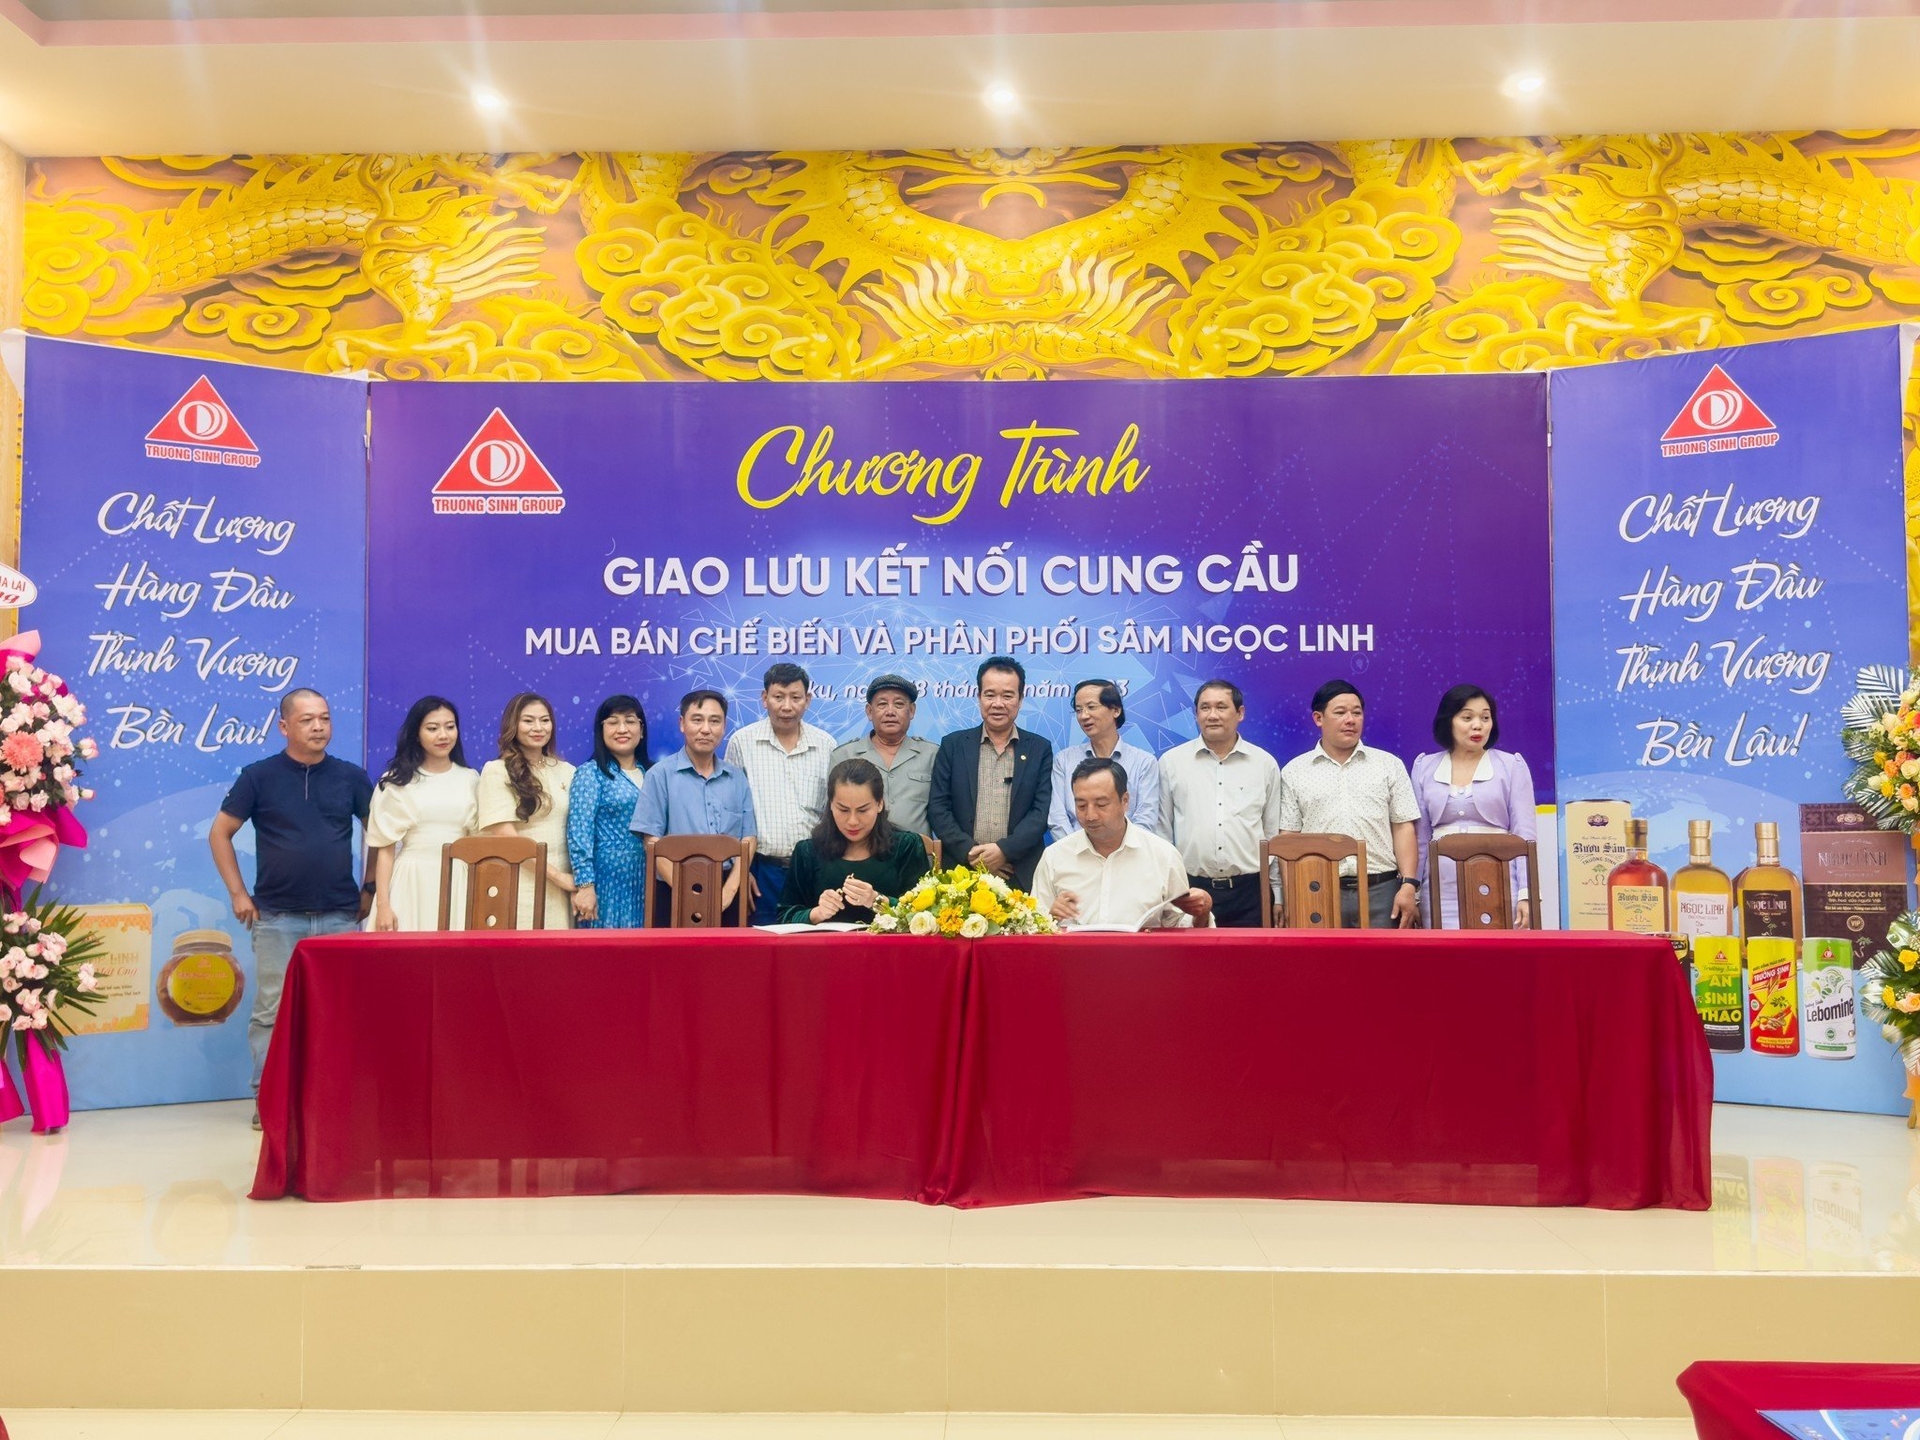 Chương trình giao lưu kết nối cung cầu đã nhận được sự hưởng ứng của nhiều doanh nghiệp và người trồng sâm Ngọc Linh. Thu Hà.